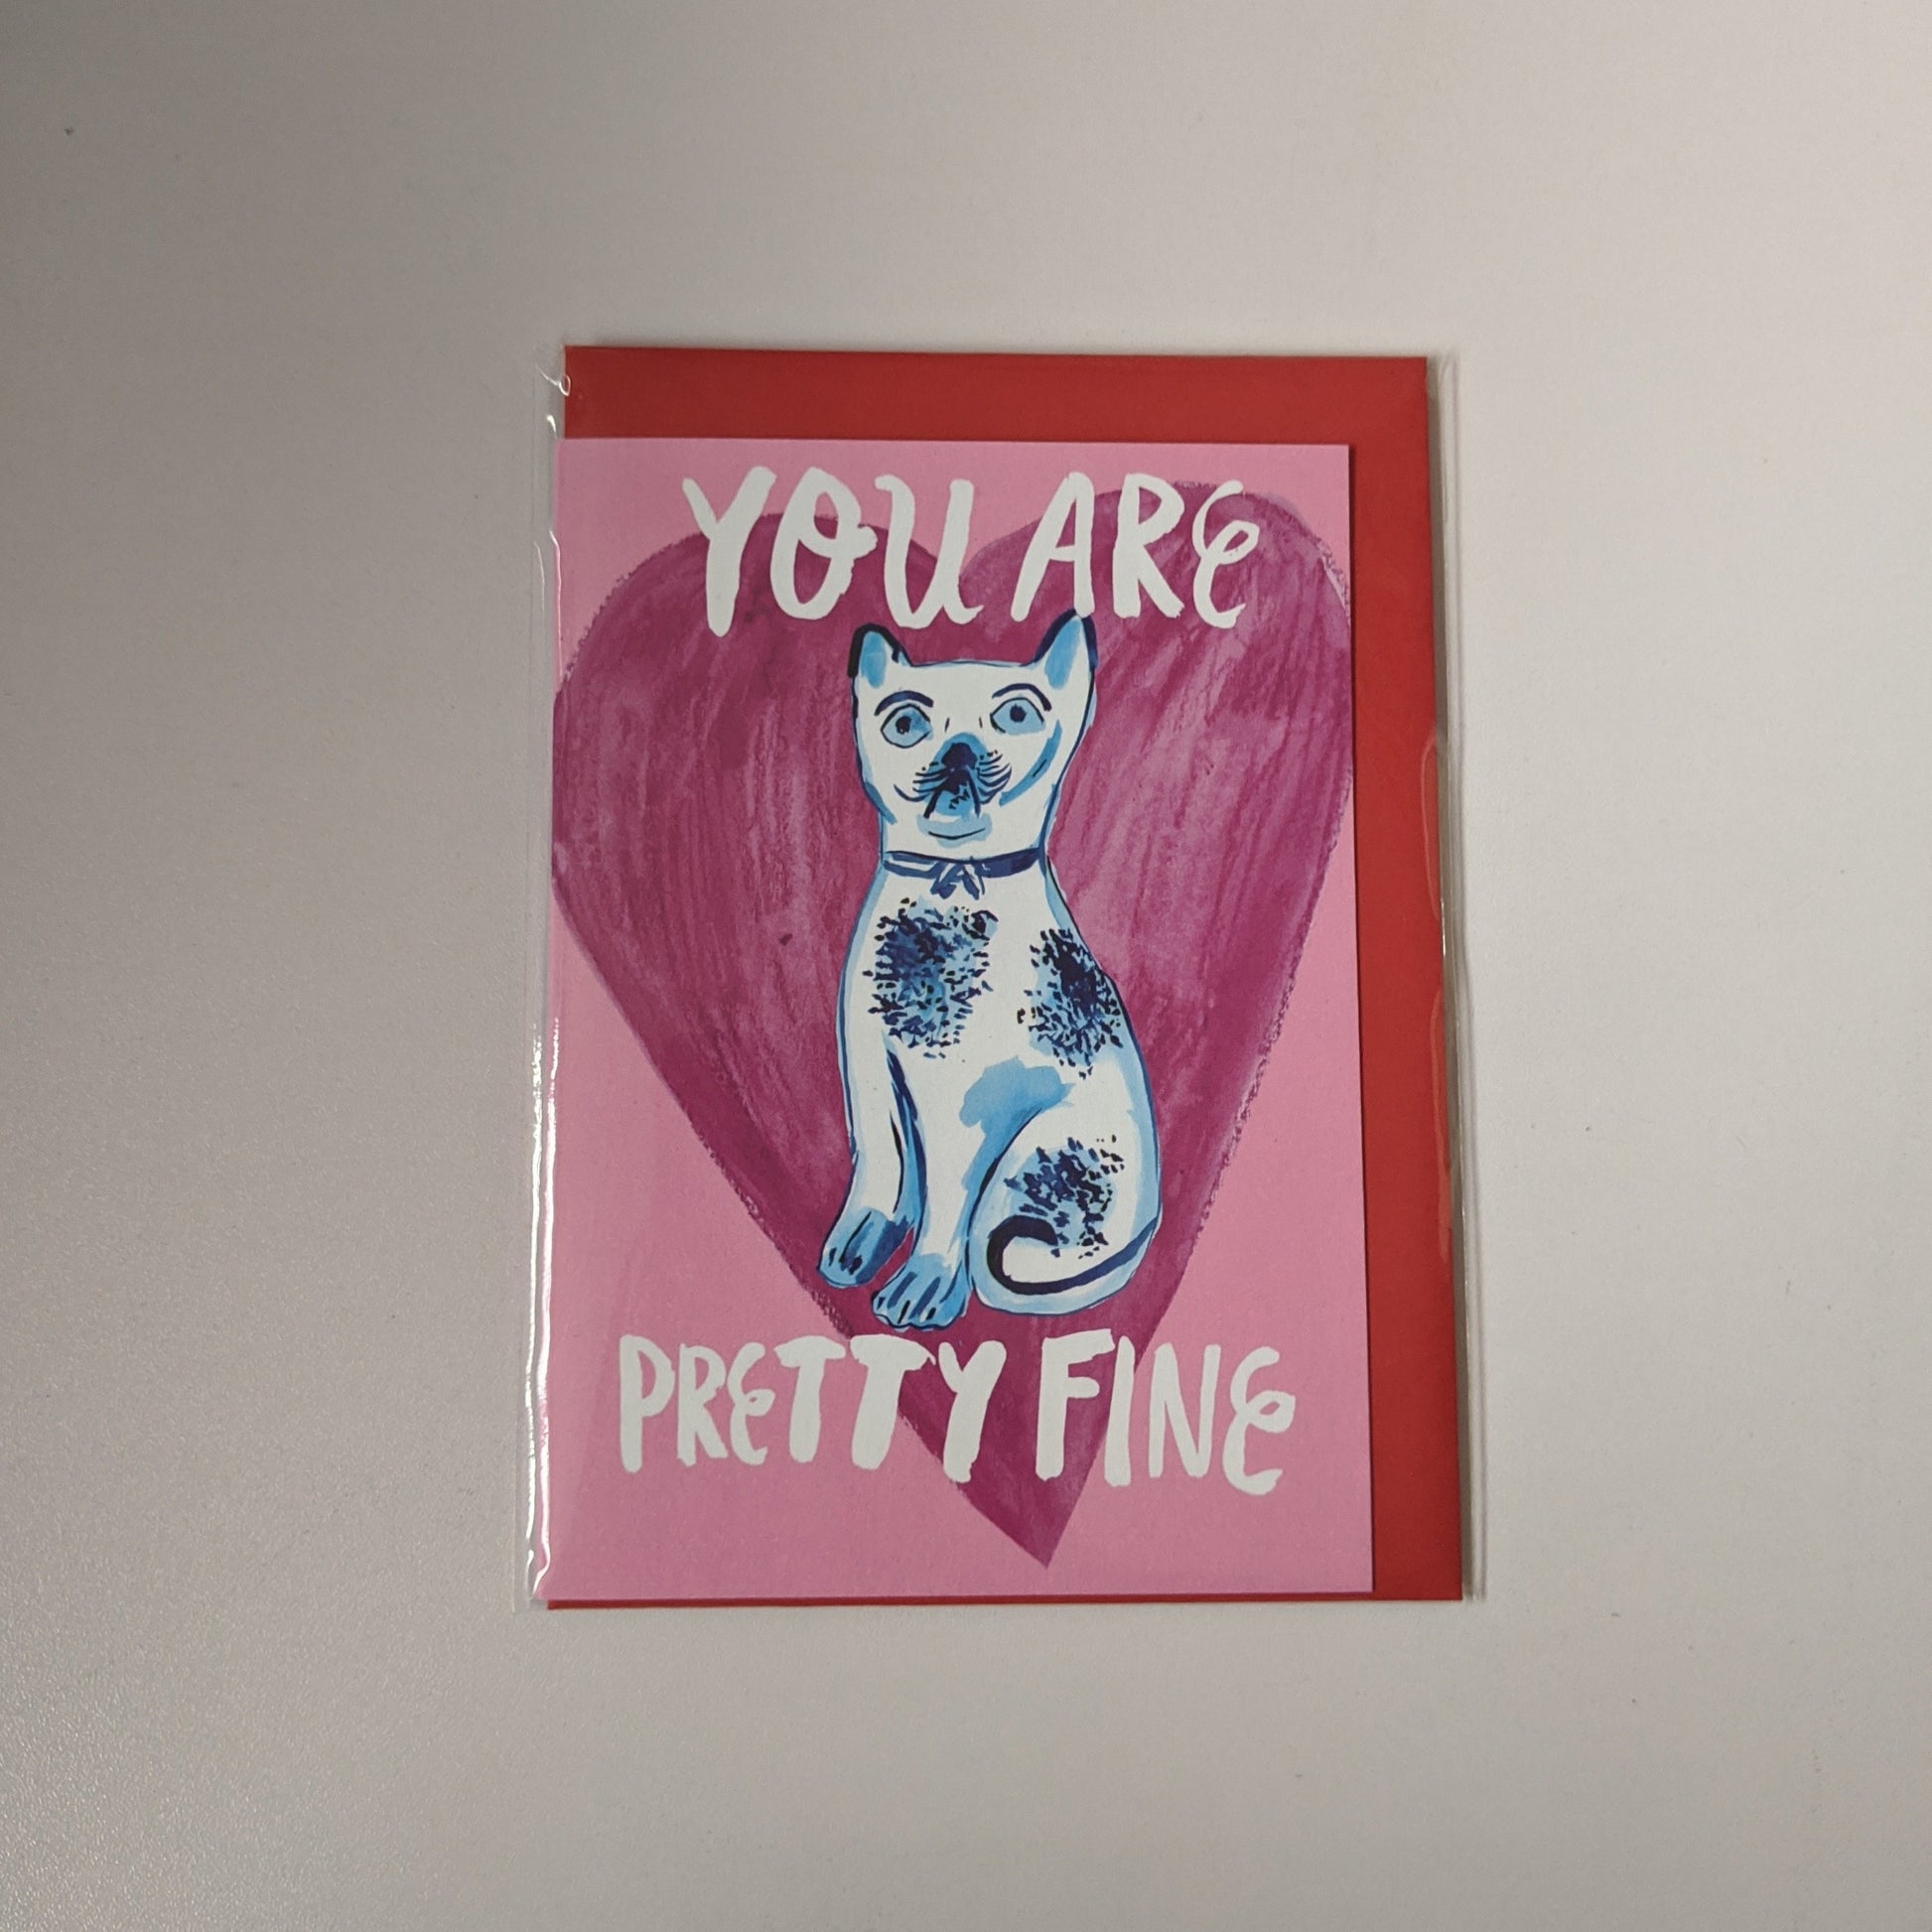 You are pretty fine